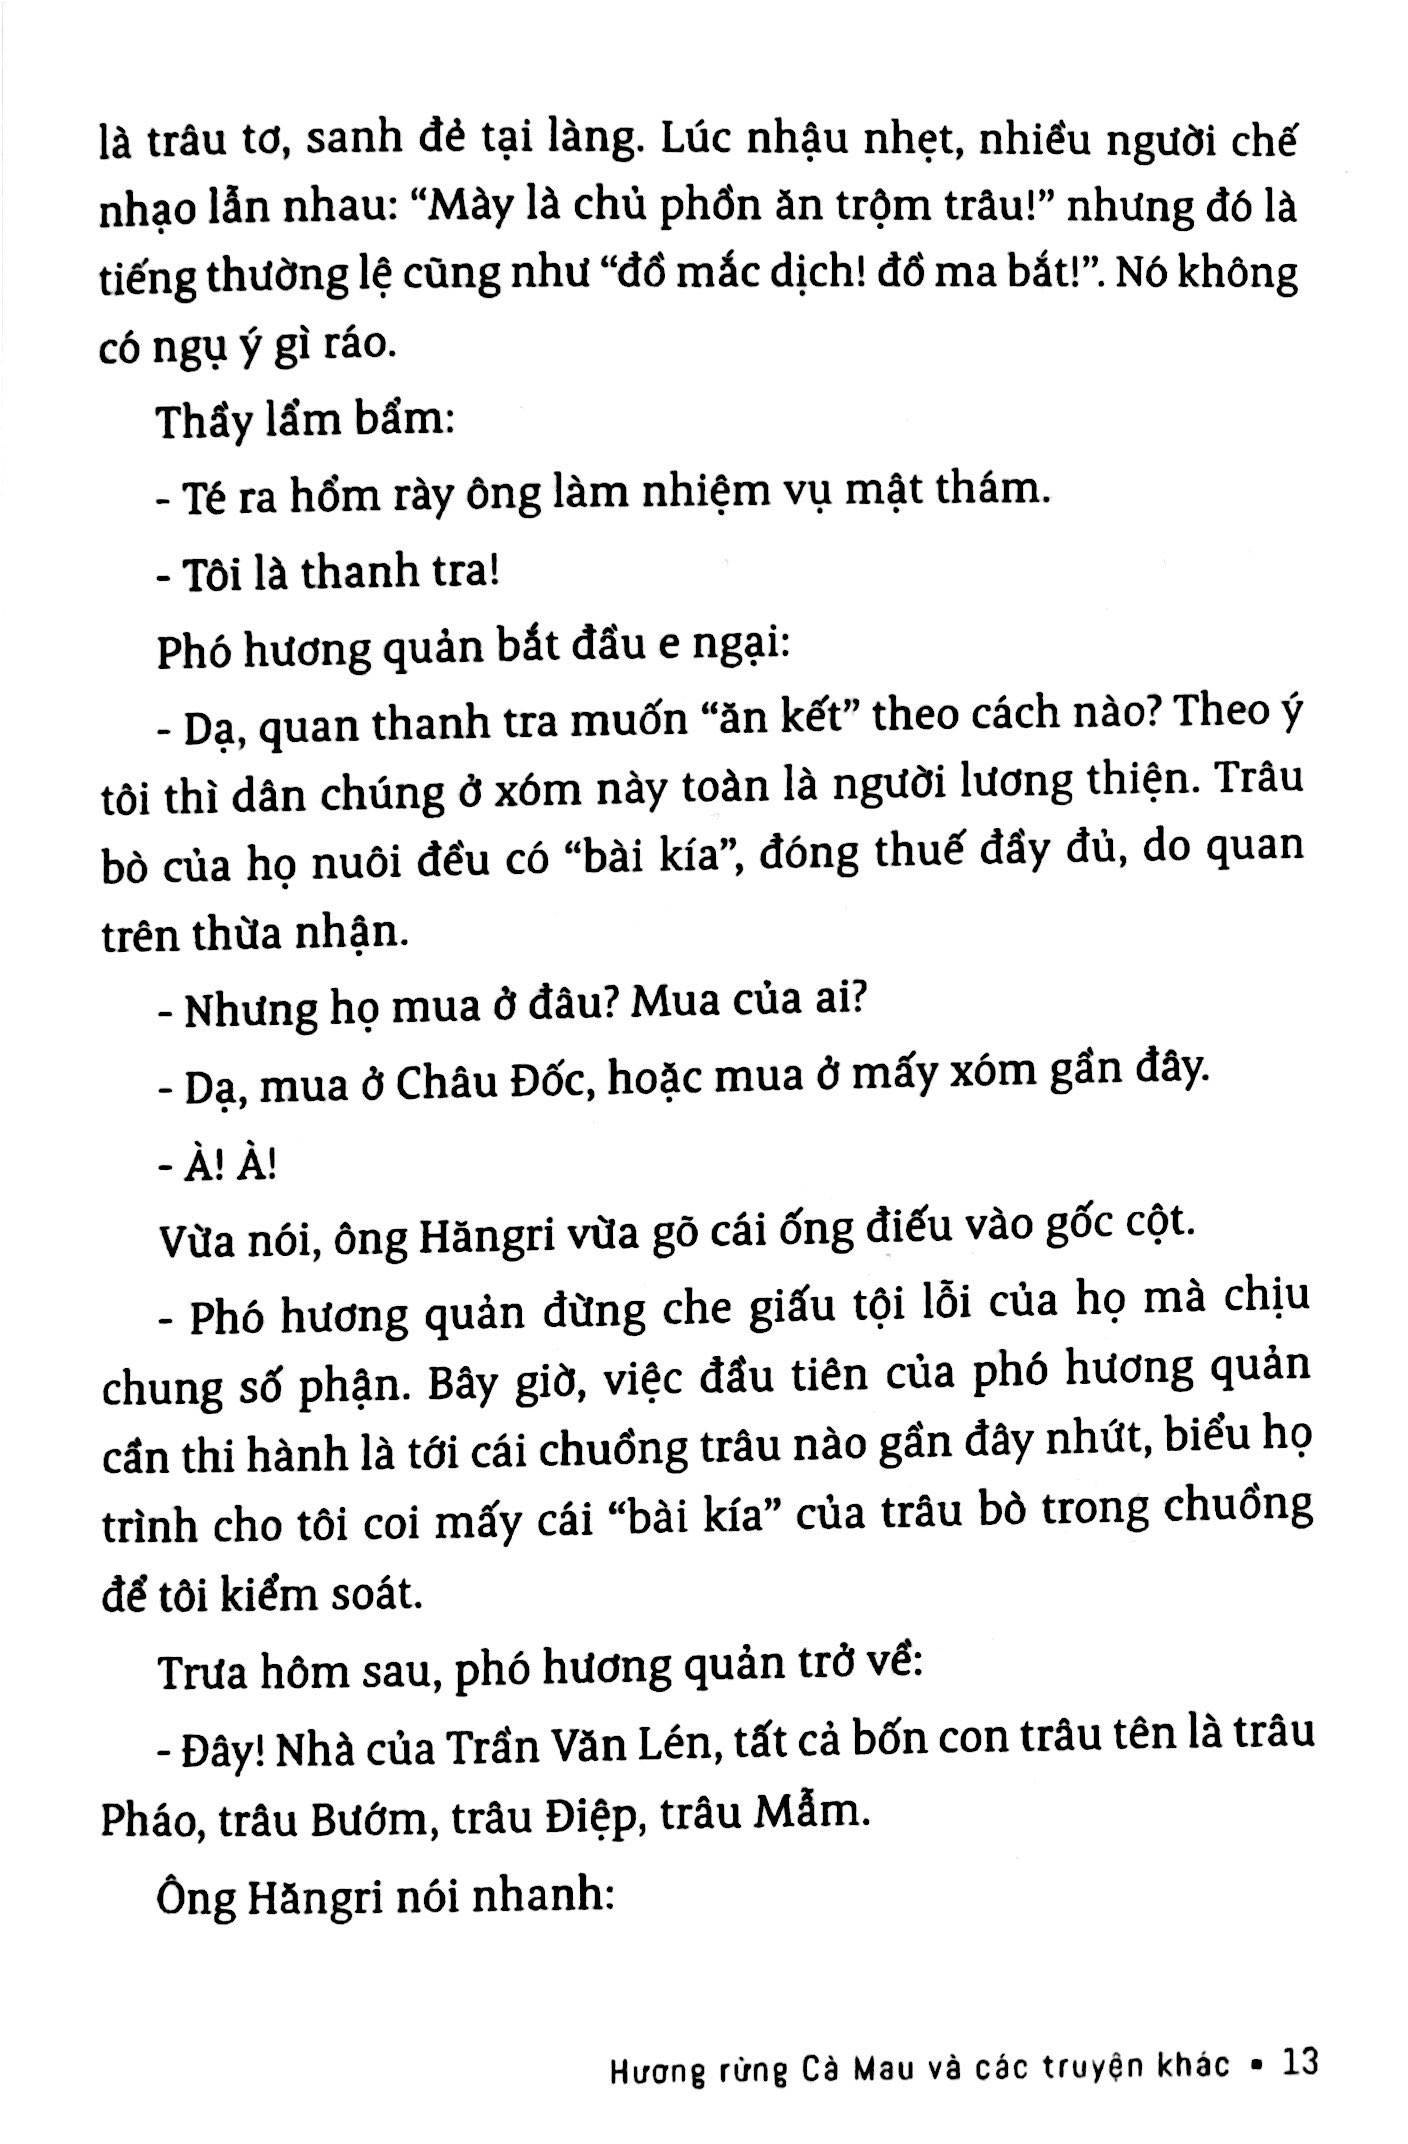 Sơn Nam - Hương Rừng Cà Mau Và Các Truyện Khác PDF